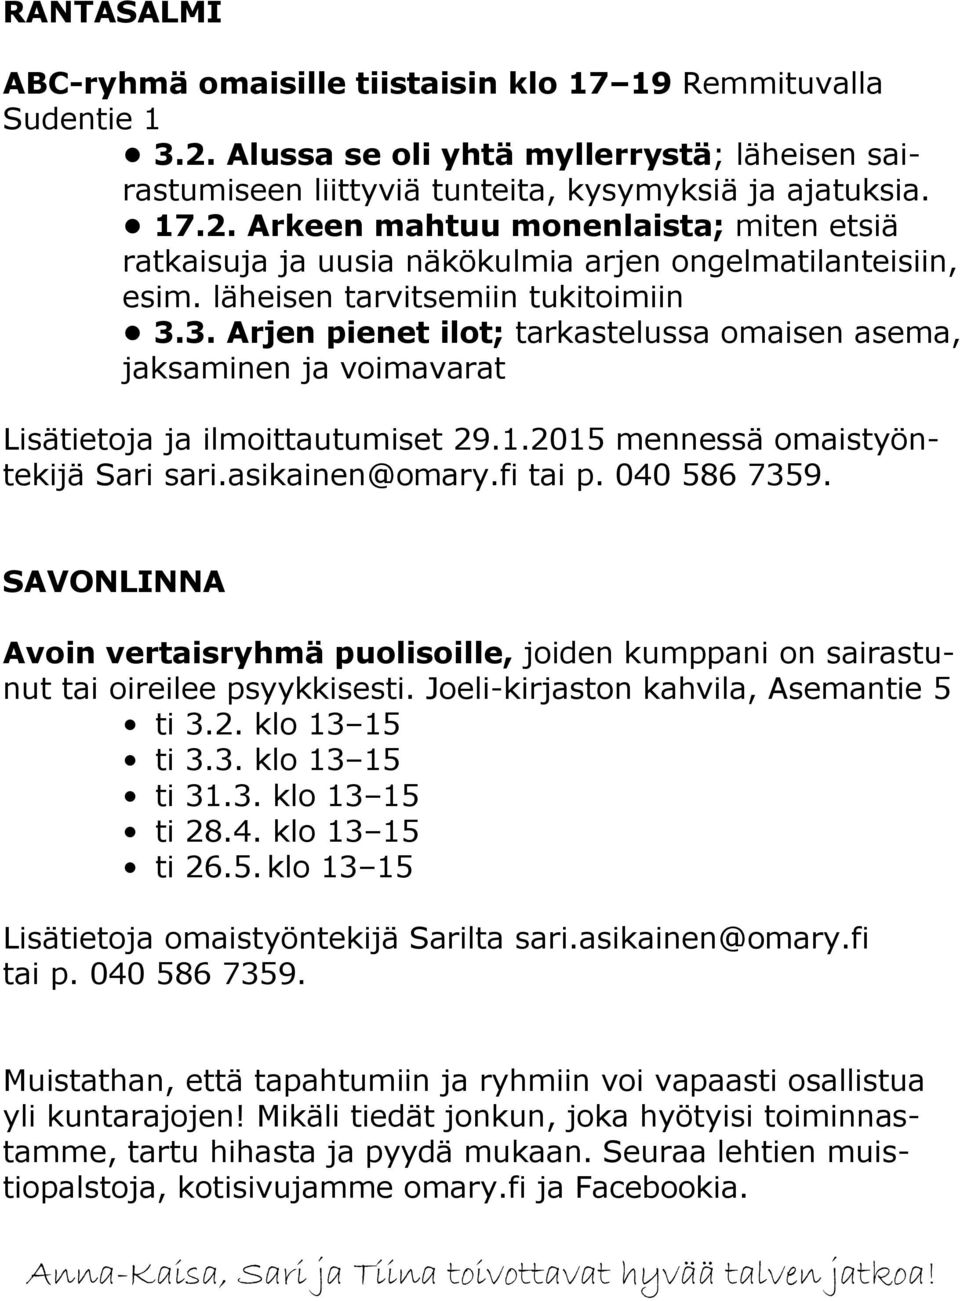 asikainen@omary.fi tai p. 040 586 7359. SAVONLINNA Avoin vertaisryhmä puolisoille, joiden kumppani on sairastunut tai oireilee psyykkisesti. Joeli-kirjaston kahvila, Asemantie 5 ti 3.2.